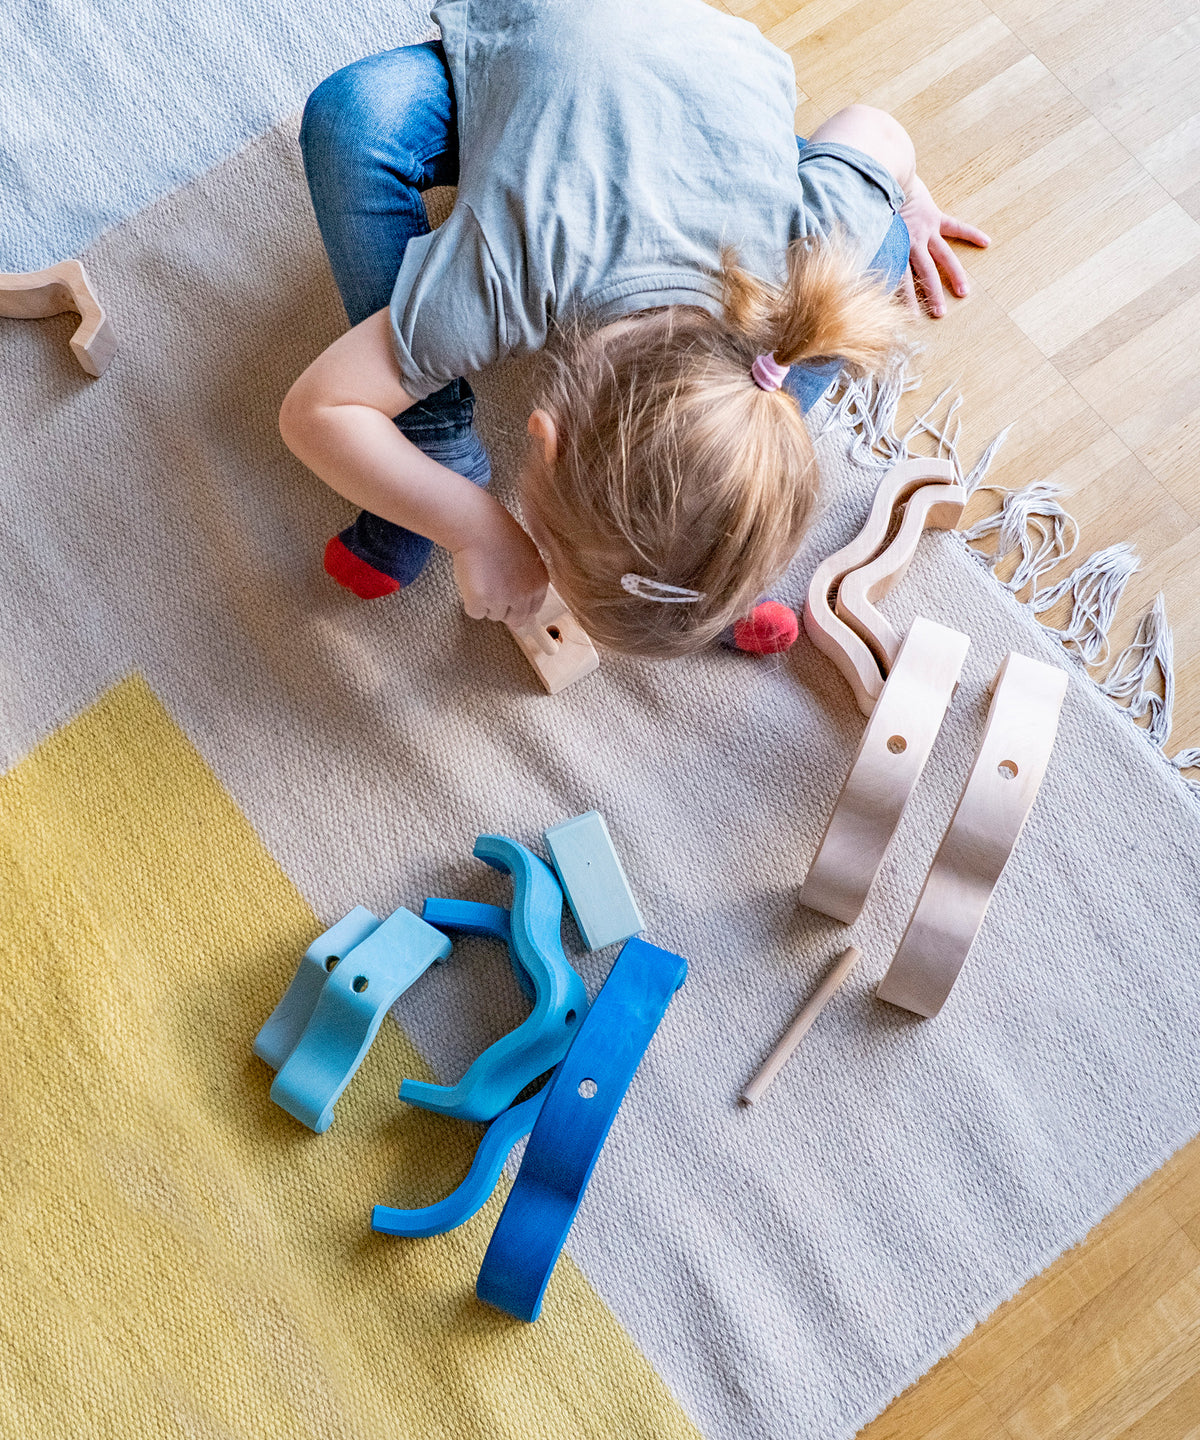 Kind spielt mit Holzspielzeug Wolke, von Montessori inspiriert.